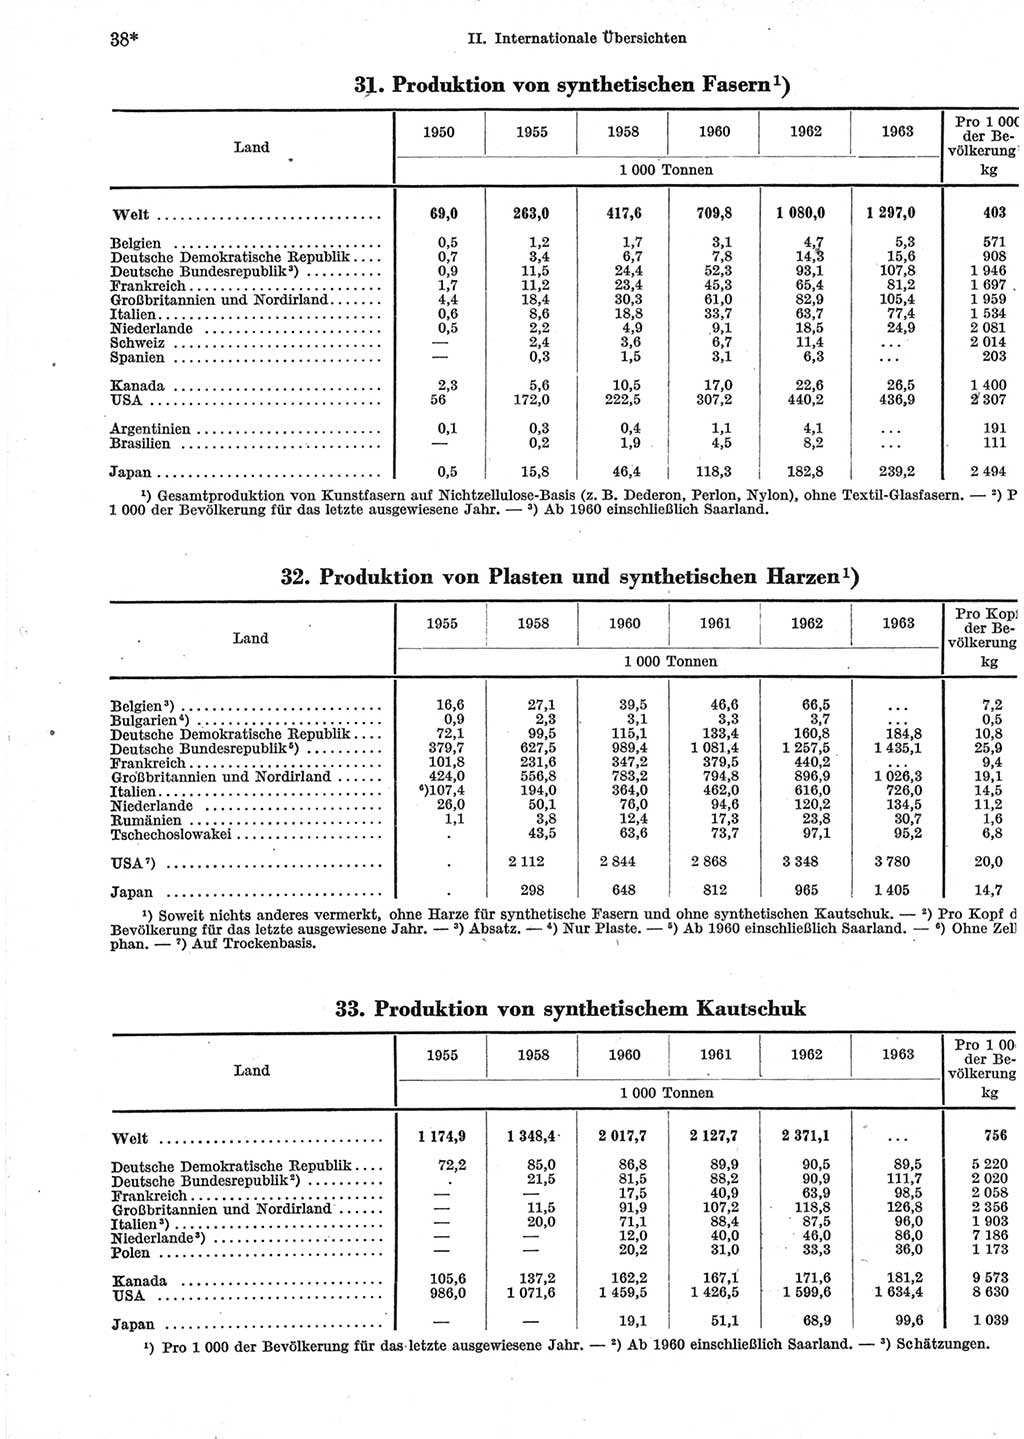 Statistisches Jahrbuch der Deutschen Demokratischen Republik (DDR) 1965, Seite 38 (Stat. Jb. DDR 1965, S. 38)